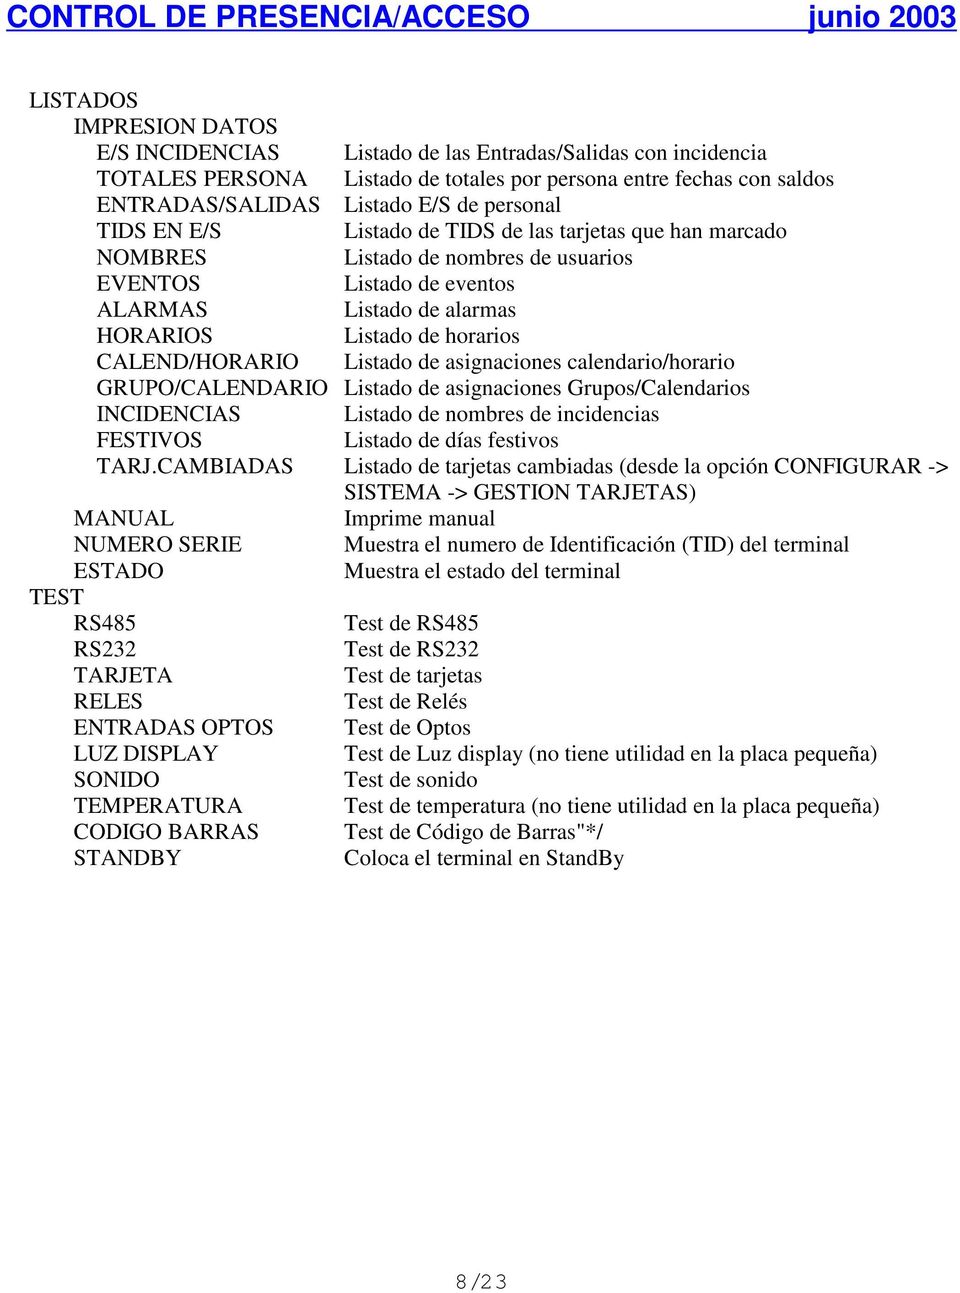 Listado de asignaciones calendario/horario GRUPO/CALENDARIO Listado de asignaciones Grupos/Calendarios INCIDENCIAS Listado de nombres de incidencias FESTIVOS Listado de días festivos TARJ.